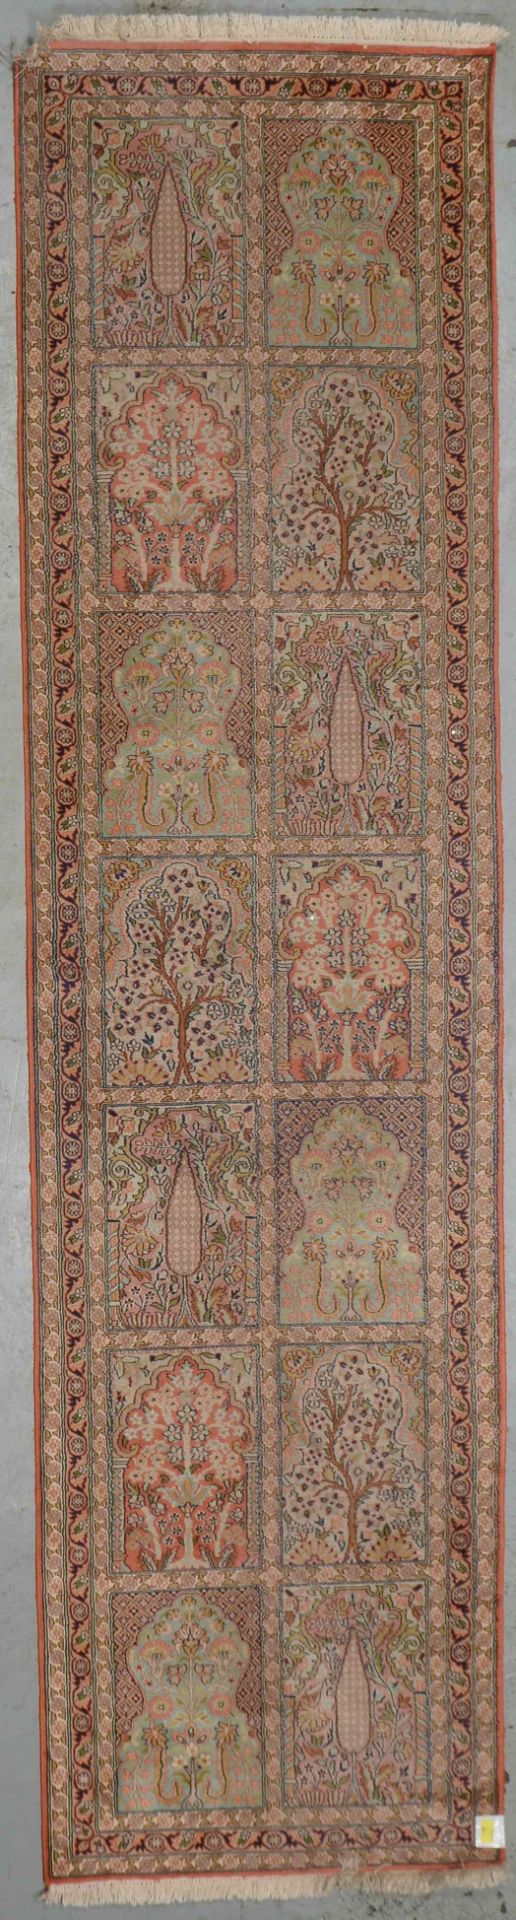 Kaschmir-Galerie, Seide, mit Feldermuster; Maße 303 x 78 cm (mit leichten Gebrauchsspuren)